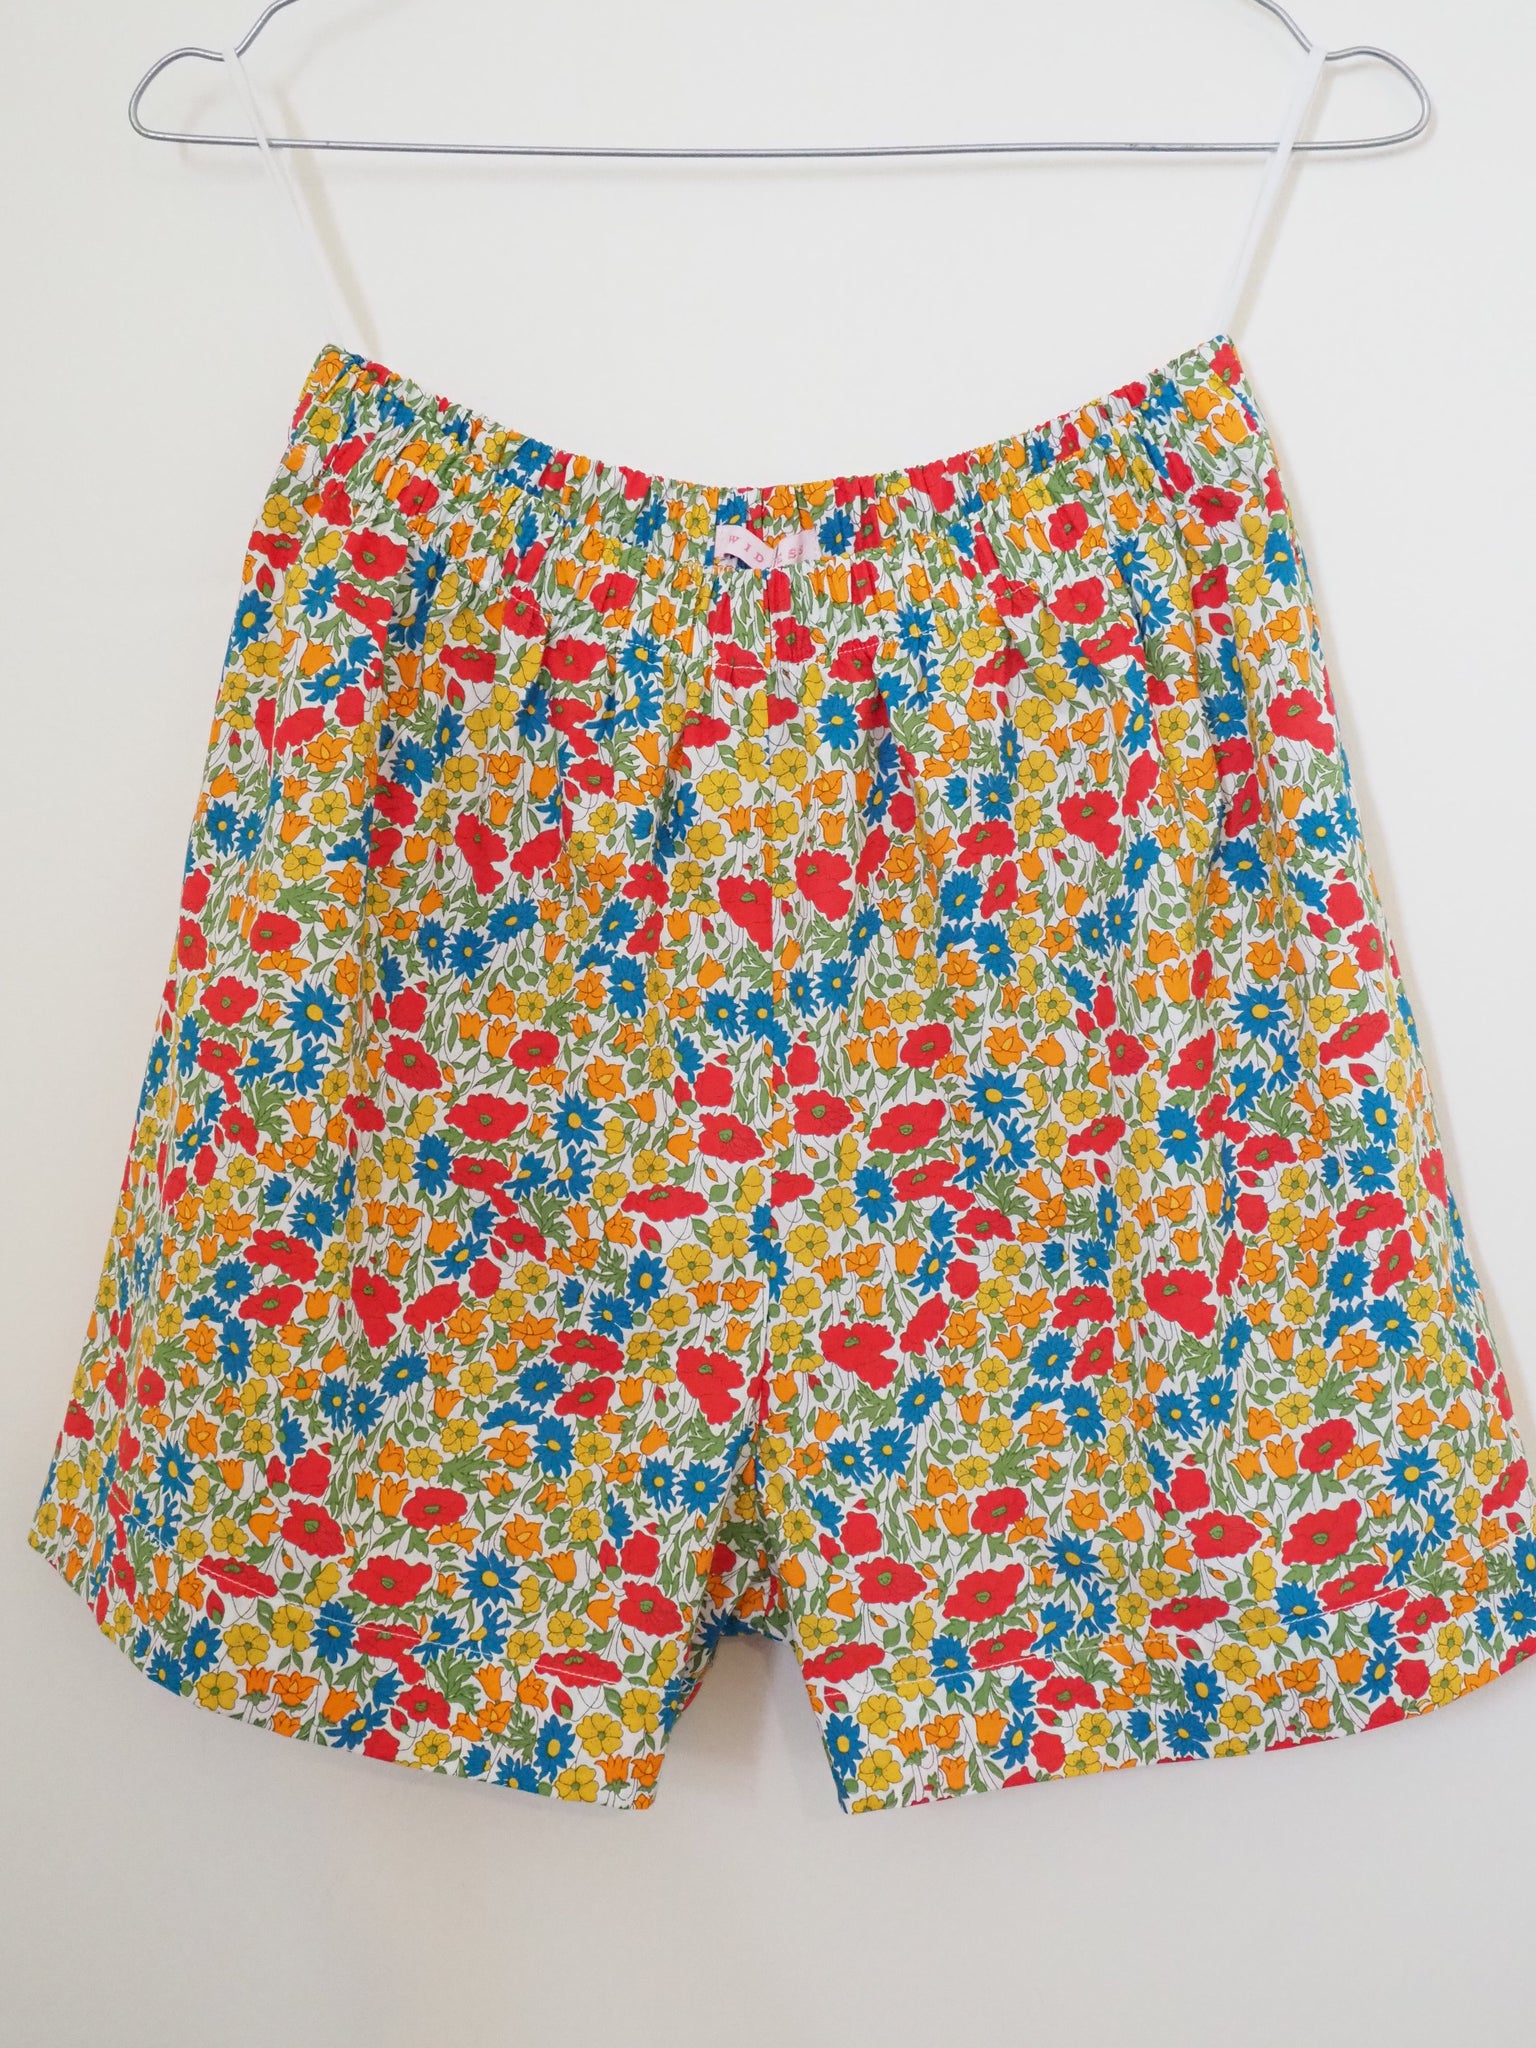 Sunshine superman shorts - Daisy Chain